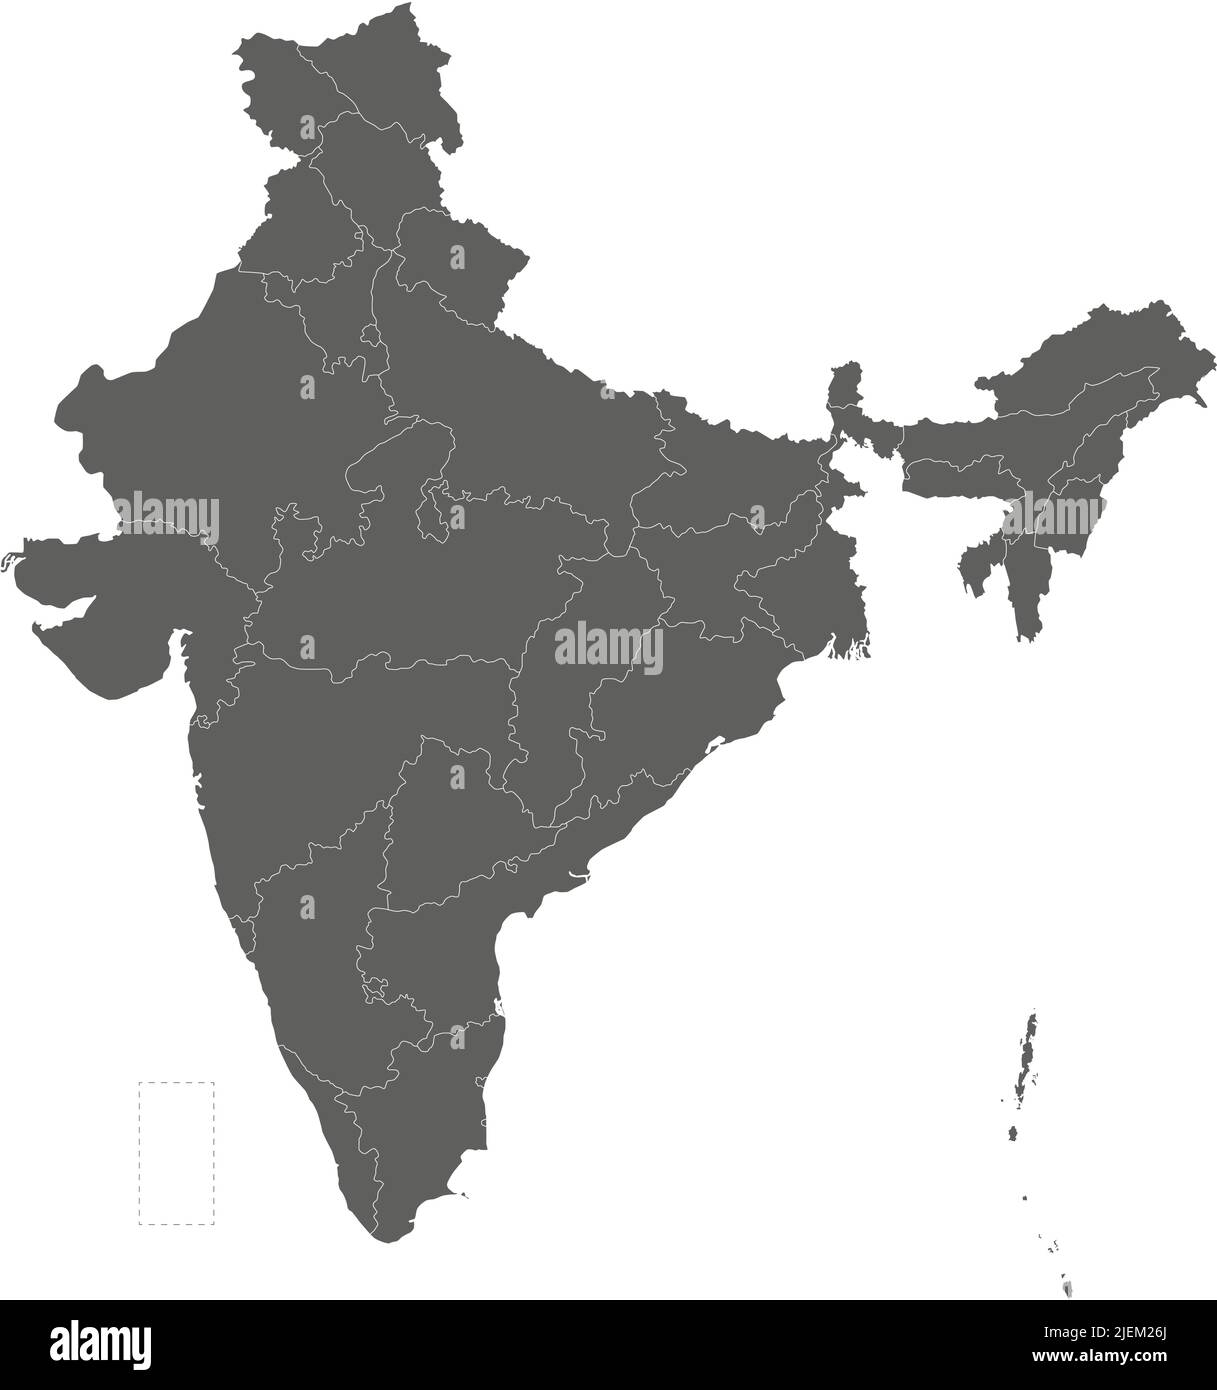 Mapa vectorial en blanco de la India con estados y territorios y divisiones administrativas. Capas editables y claramente etiquetadas. Ilustración del Vector